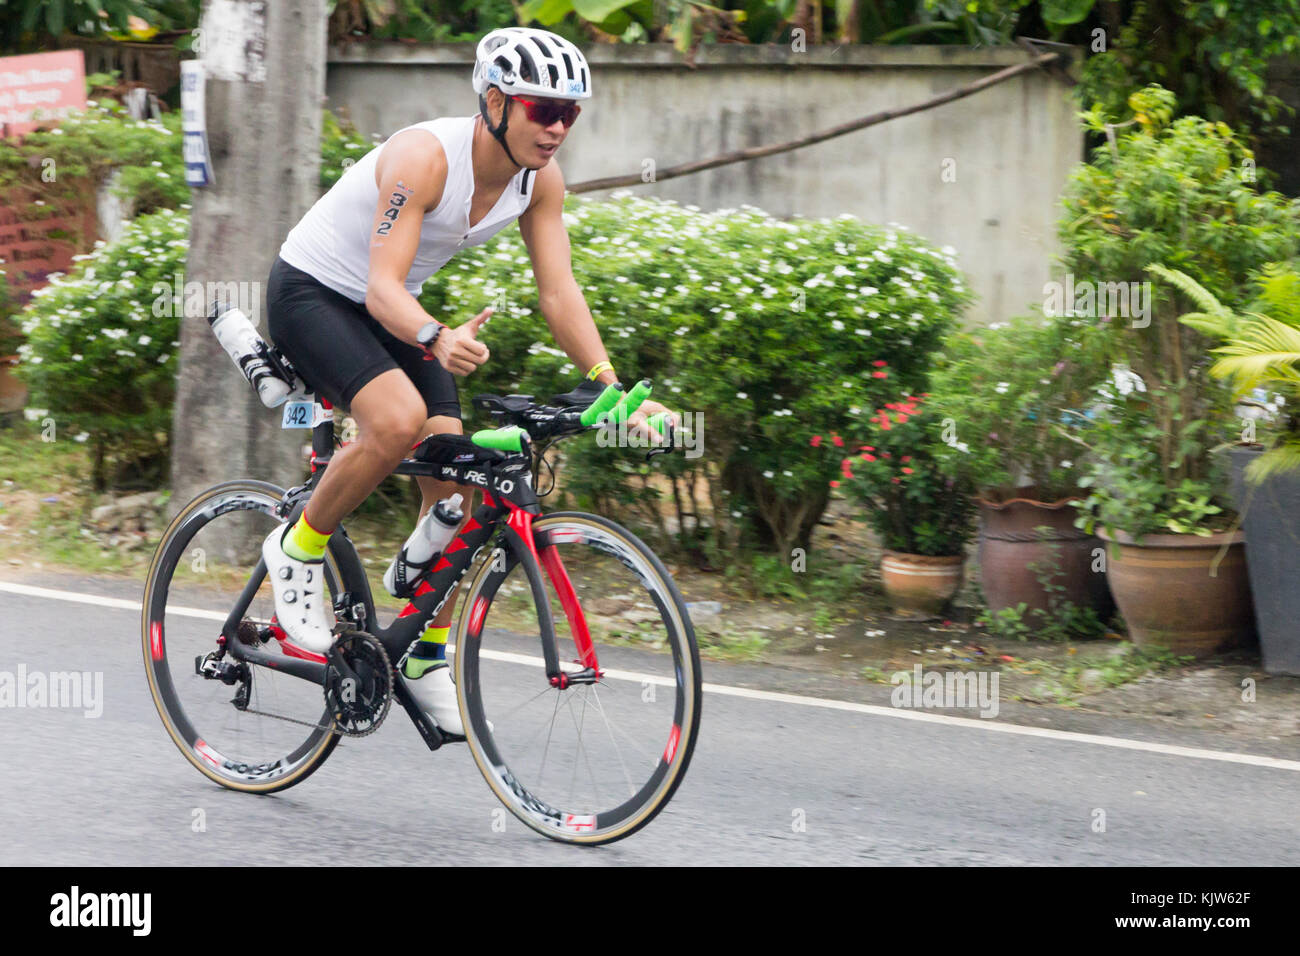 La Thaïlande . 26 Nov, 2017. Un concurrent dans le premier Ironman 70.3 de la Thaïlande 26 novembre 2017 - stade course cycliste Crédit : kevin hellon/Alamy Live News Banque D'Images